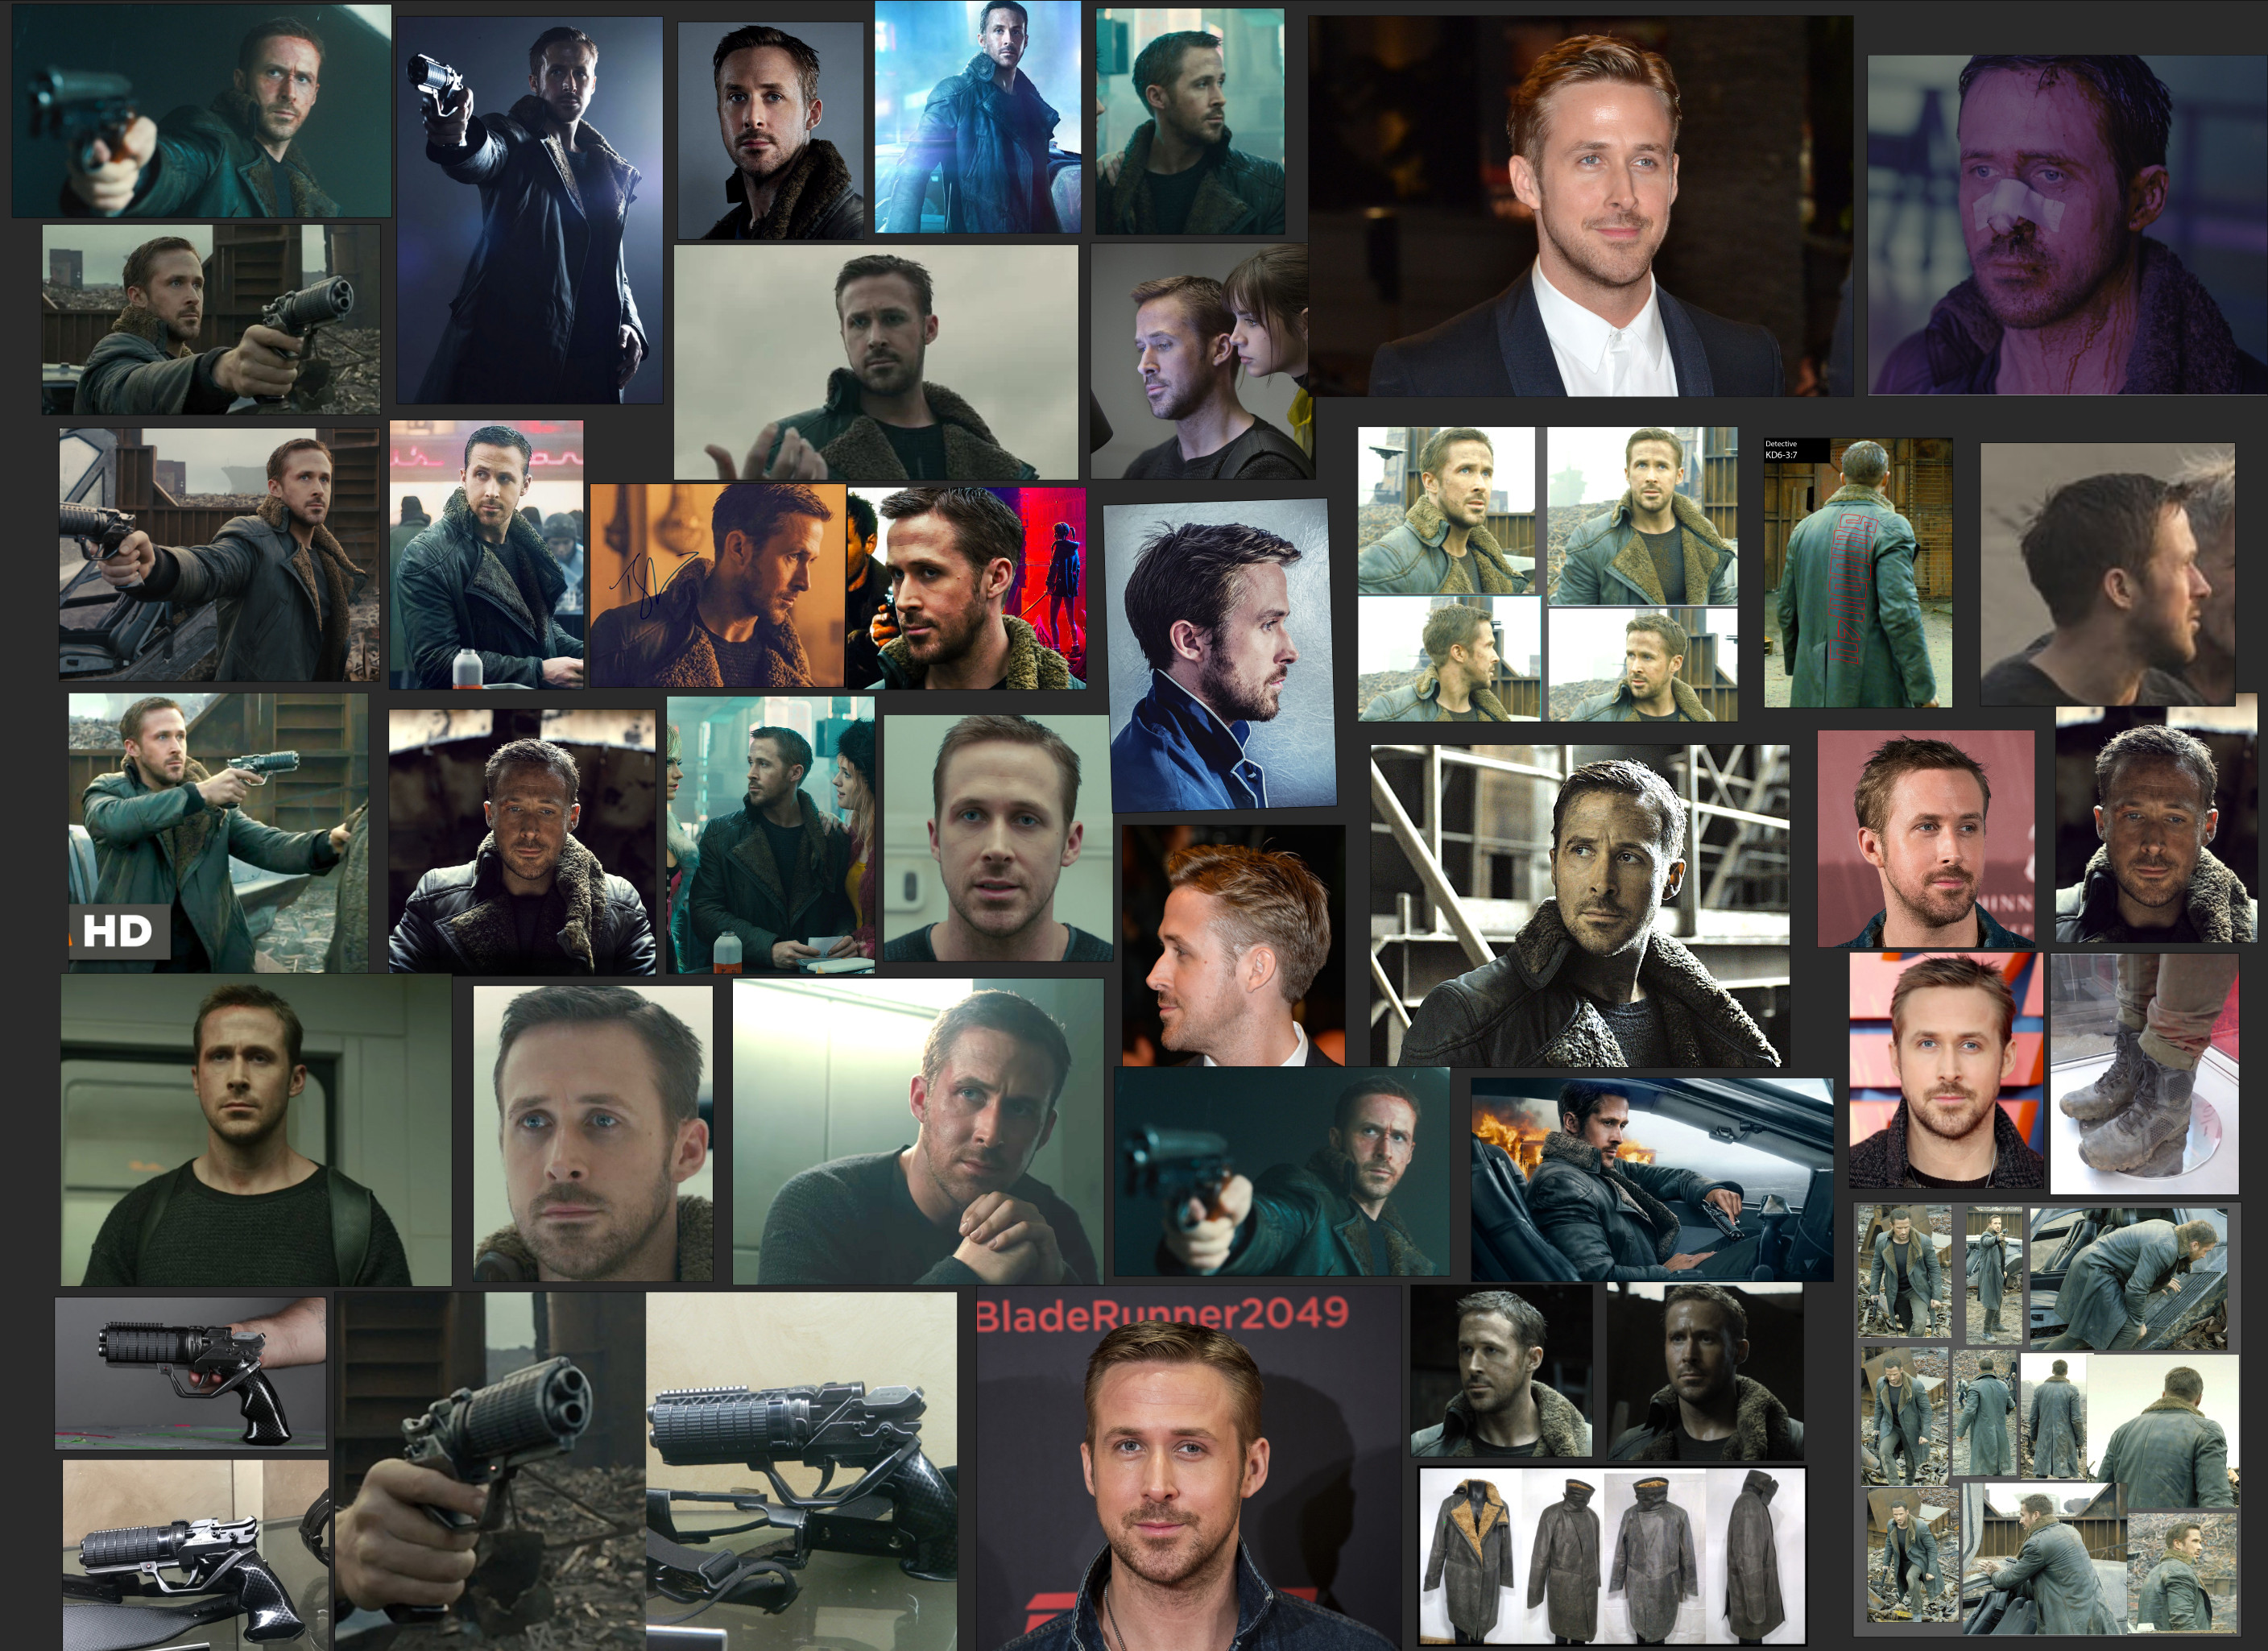 References: Ryan Gosling/ Blade Runner 2049